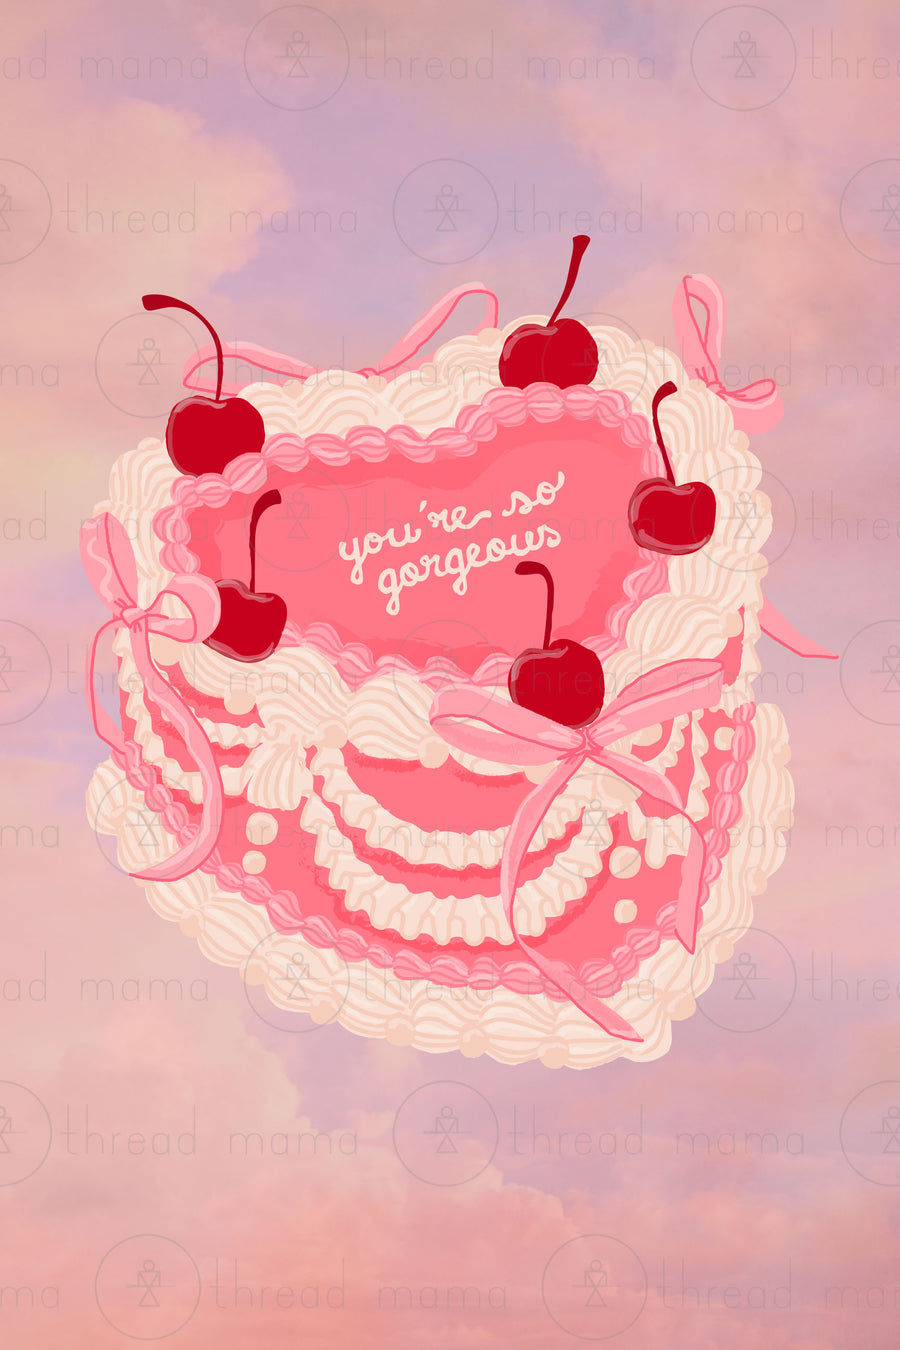 You're So Gorgeous Cake - Set